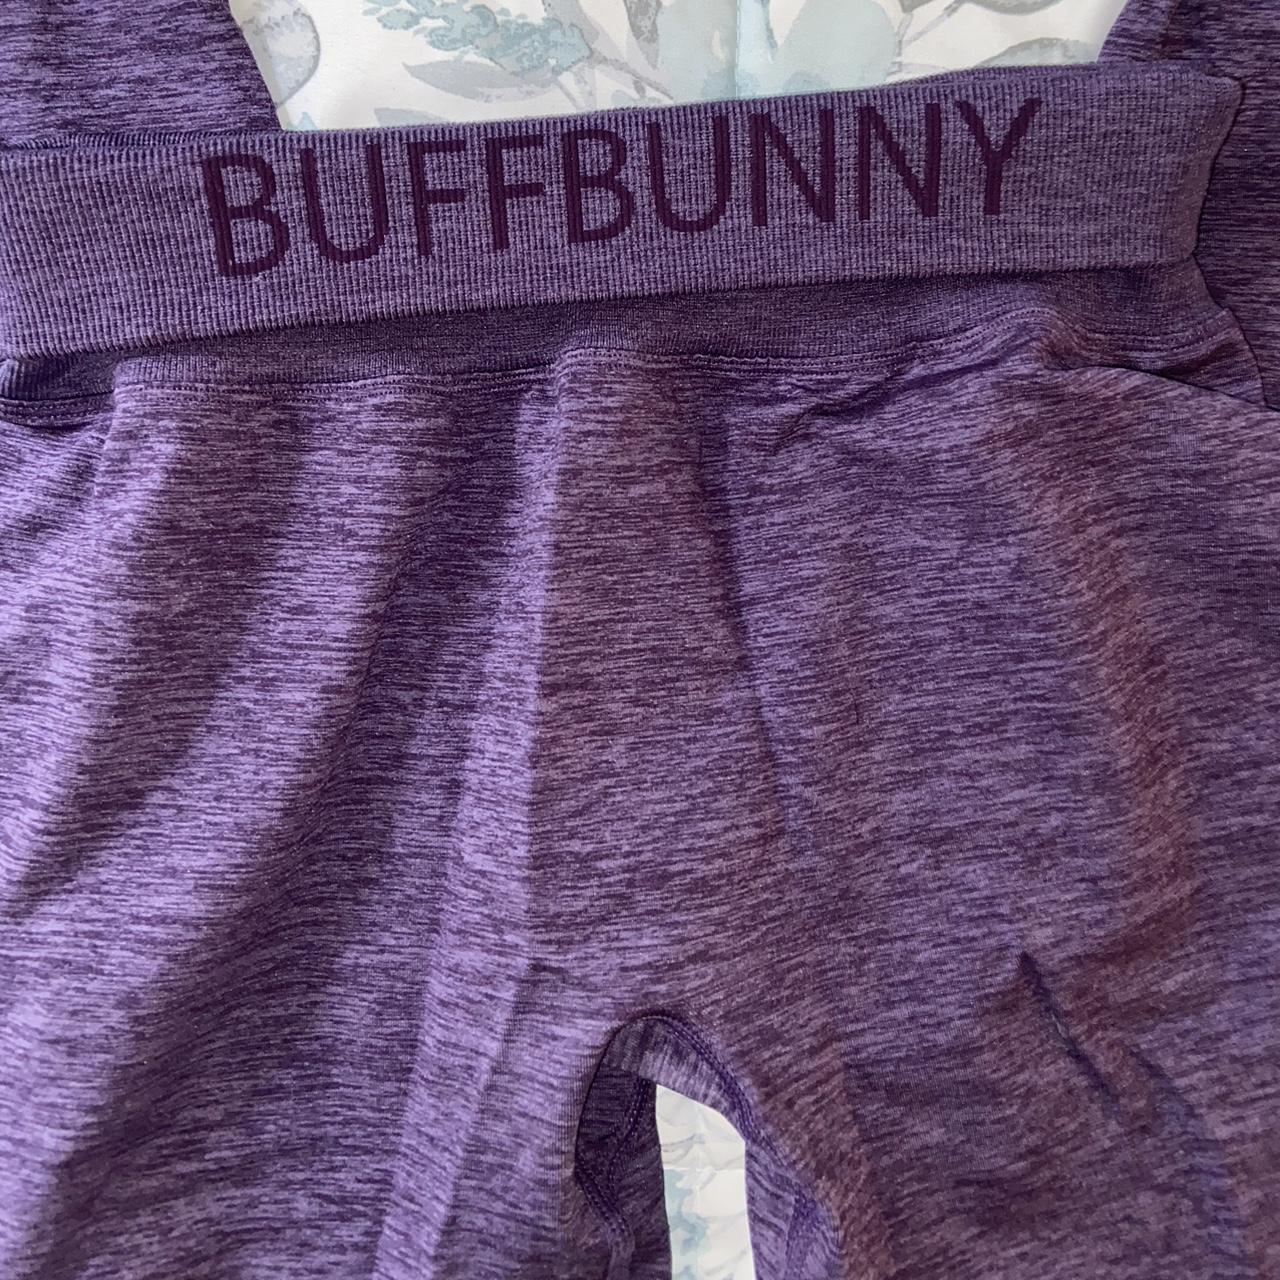 Buffbunny collection lavender shorts sz medium